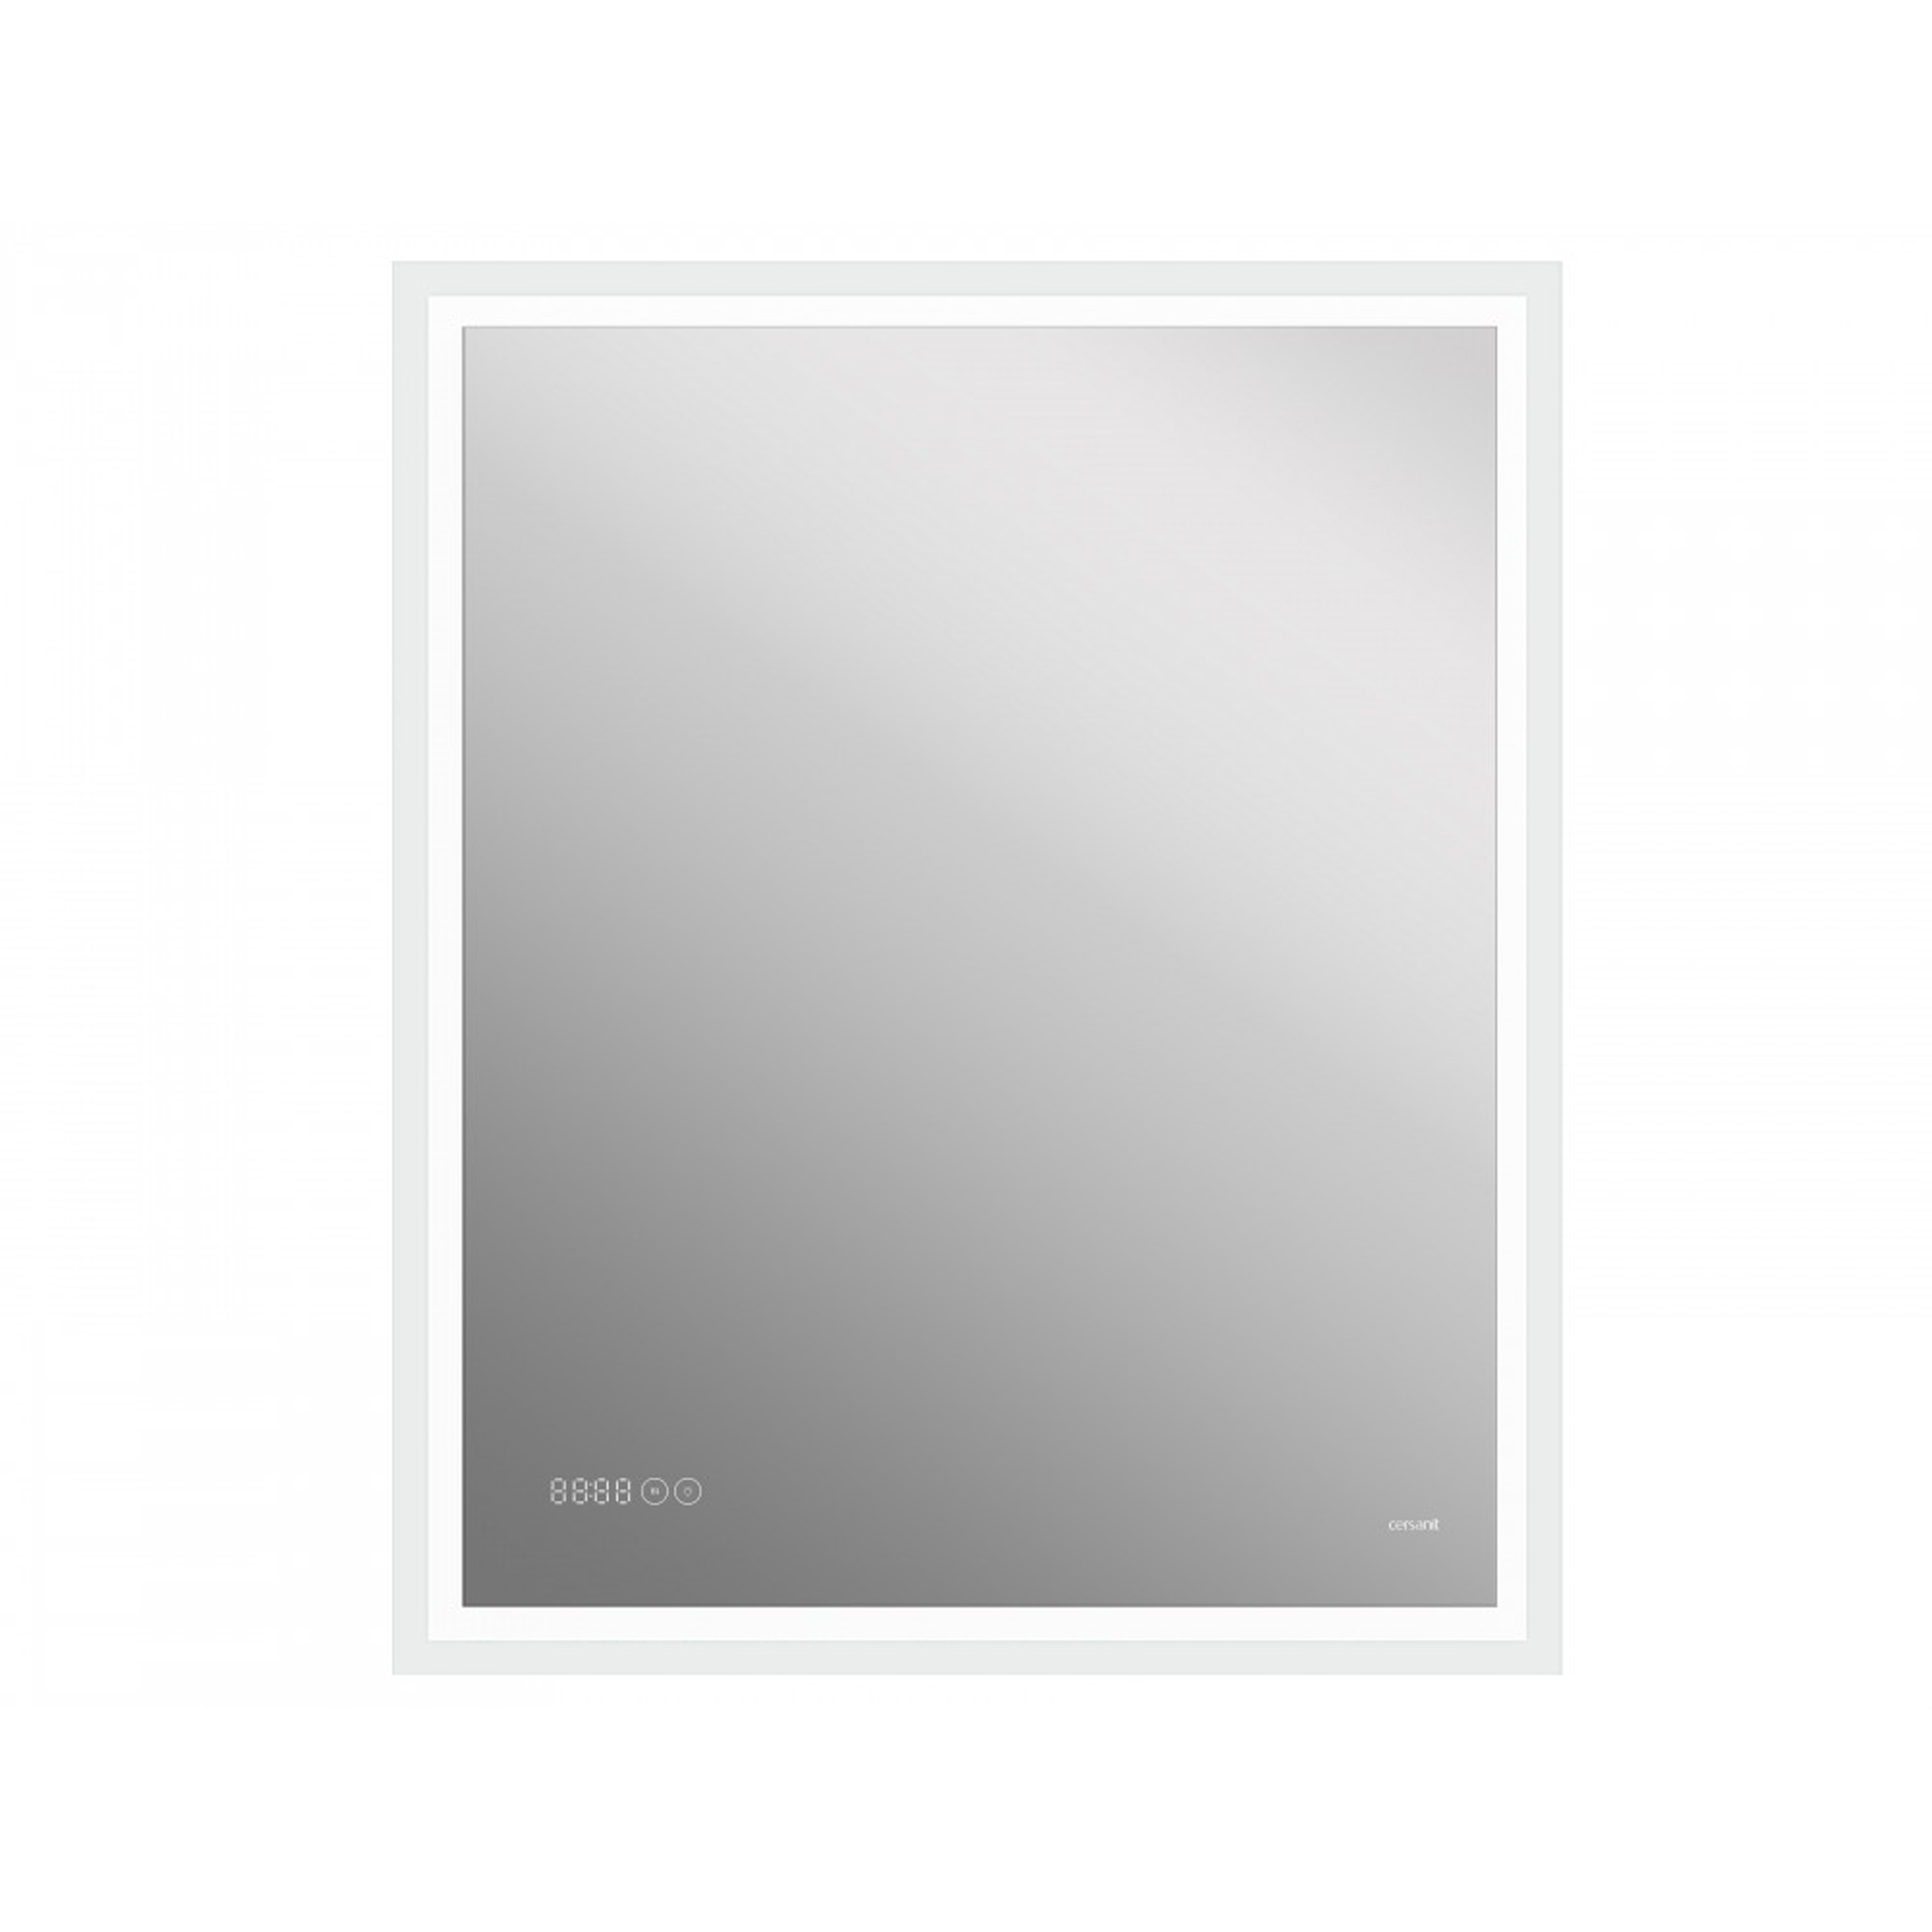 Зеркало Cersanit Led 080 design pro 70 с подсветкой, цвет без цвета (просто зеркальное полотно) KN-LU-LED080*70-p-Os - фото 1